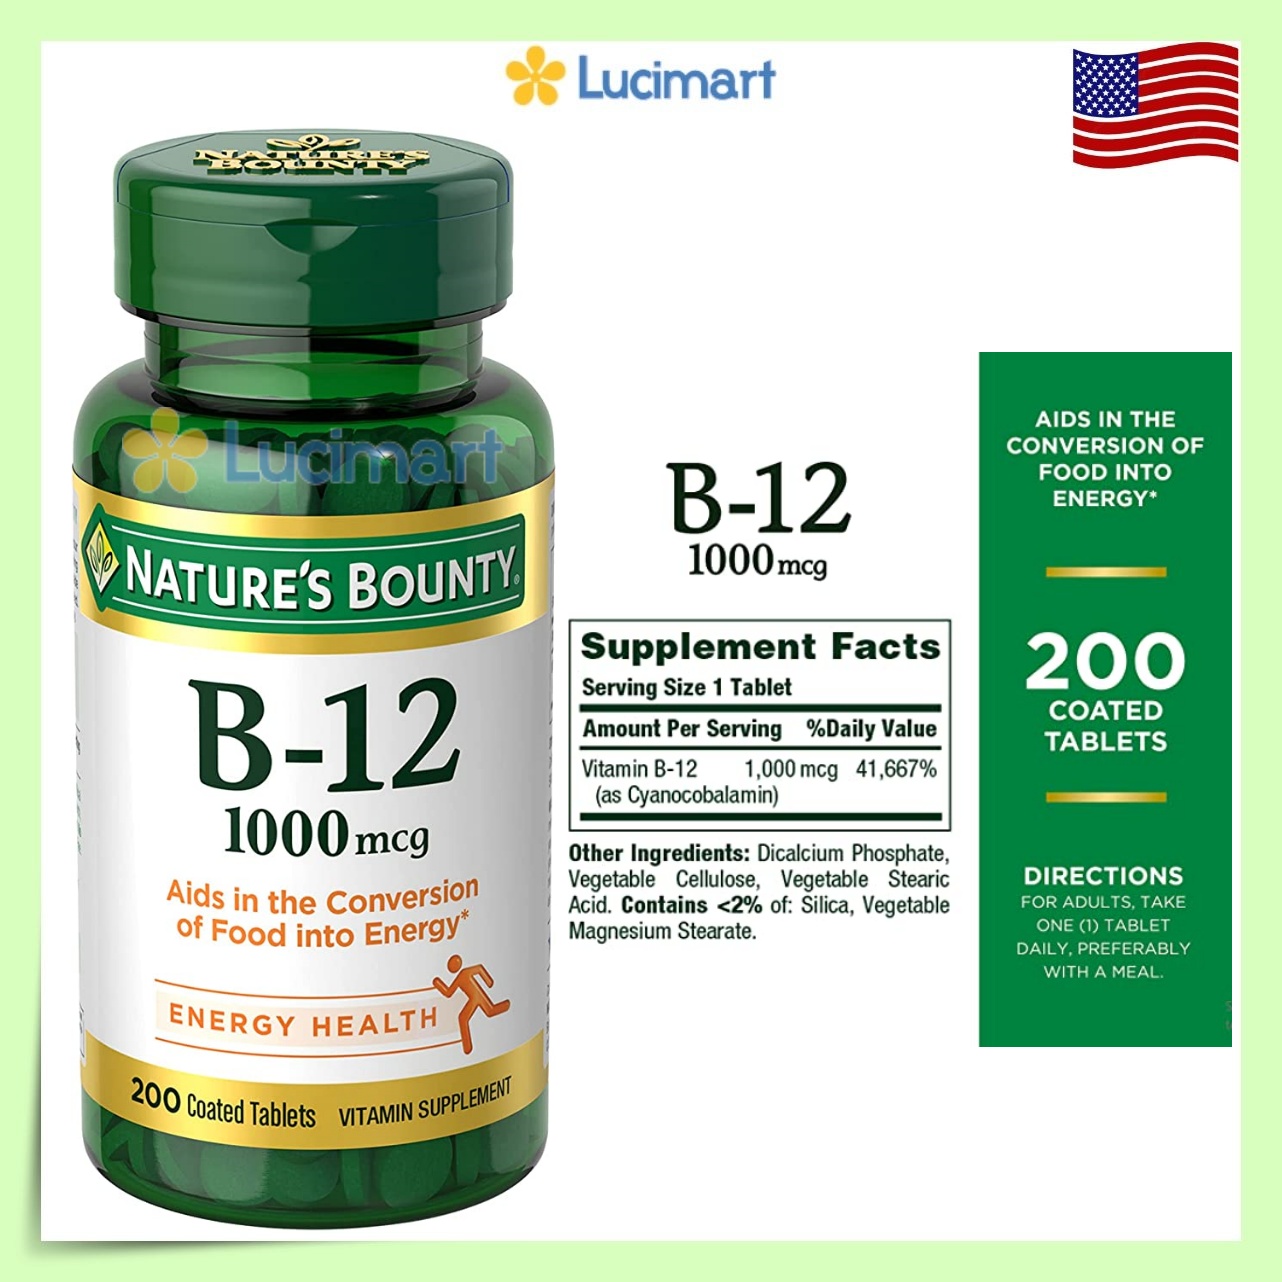 Viên uống Vitamin B-12 Nature’s Bounty 1000mcg hũ 100 viên / 200 viên [Hàng Mỹ]